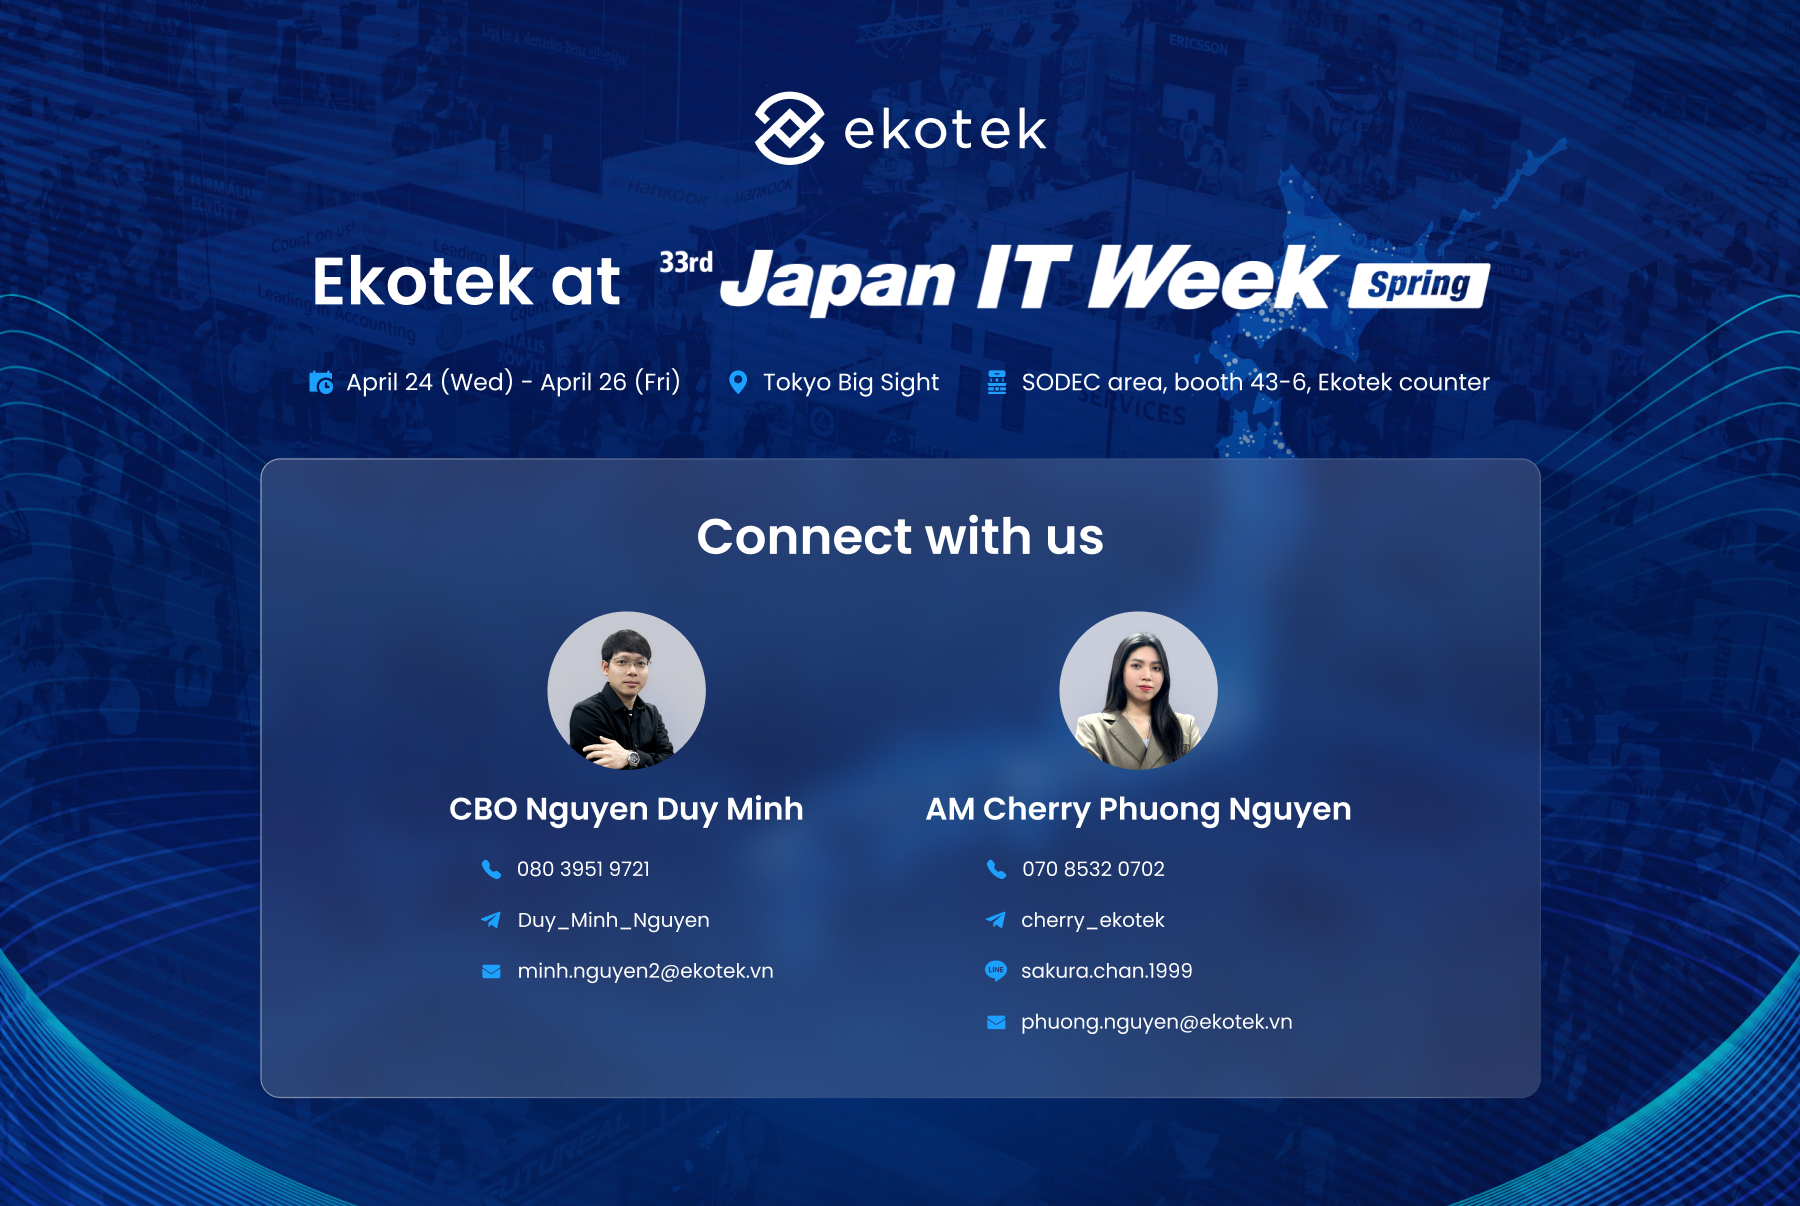 Ekotek staff at Japan IT Week